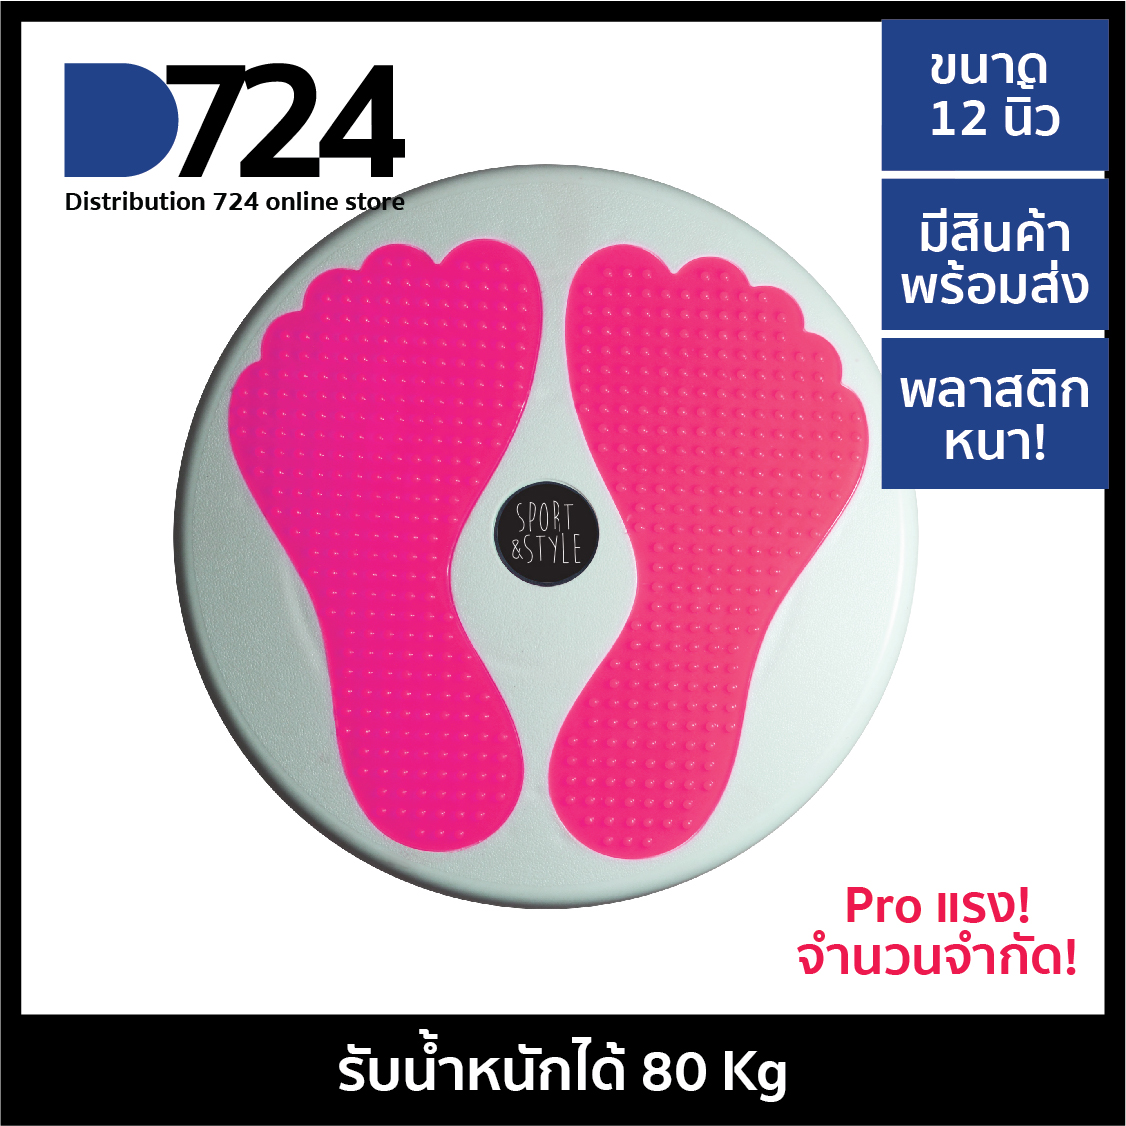 จานทวิส ที่นวดเท้า นวดเท้า ขนาดใหญ่ รูปรอยเท้า สีชมพูสะท้อนแสง / twist disc foot massage board